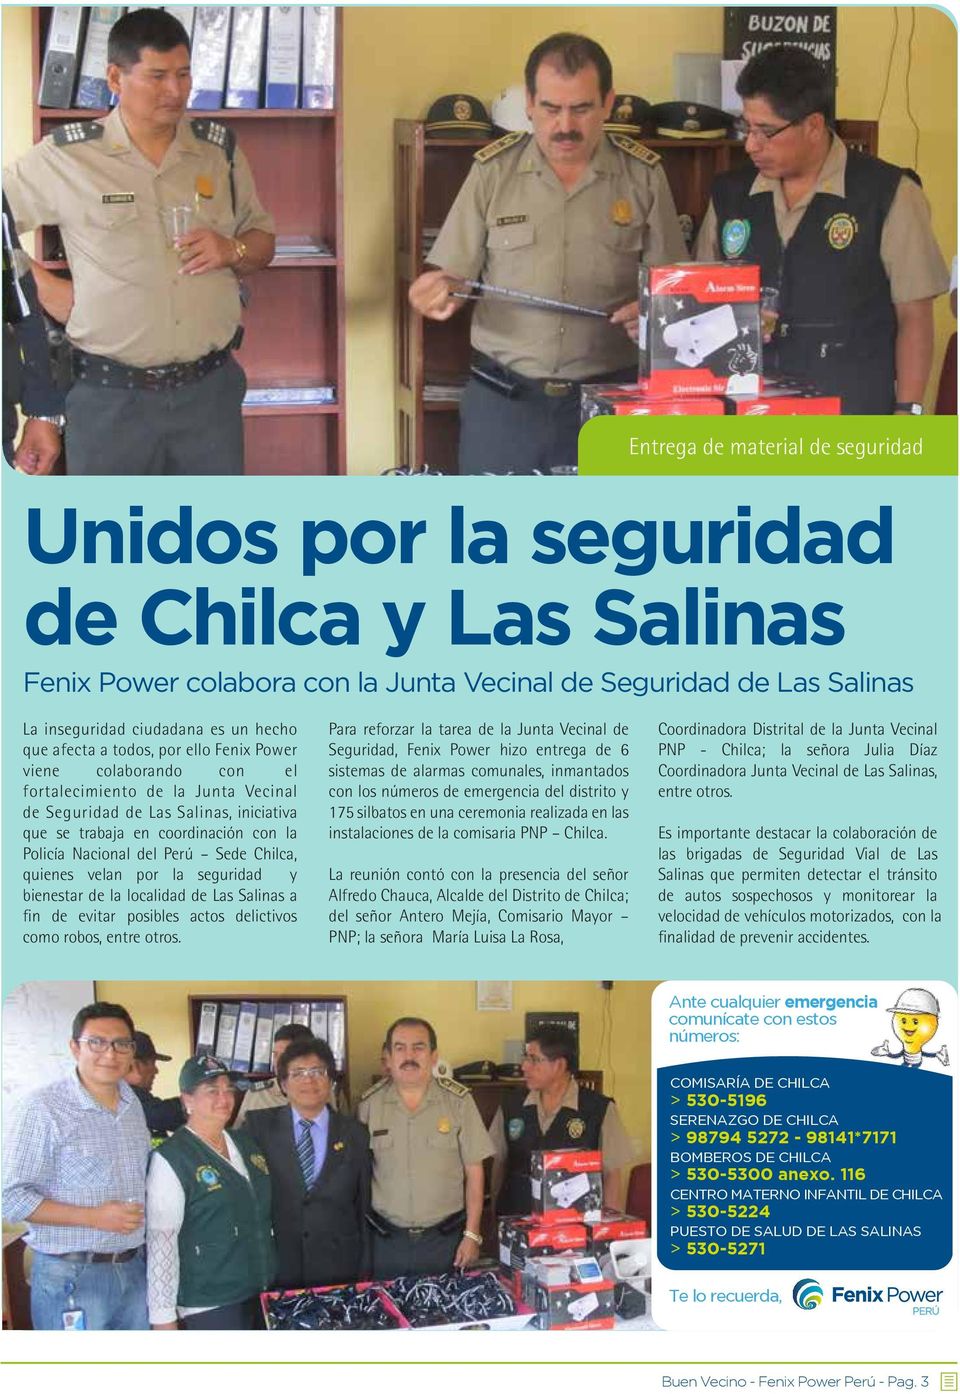 Chilca, quienes velan por la seguridad y bienestar de la localidad de Las Salinas a fin de evitar posibles actos delictivos como robos, entre otros.